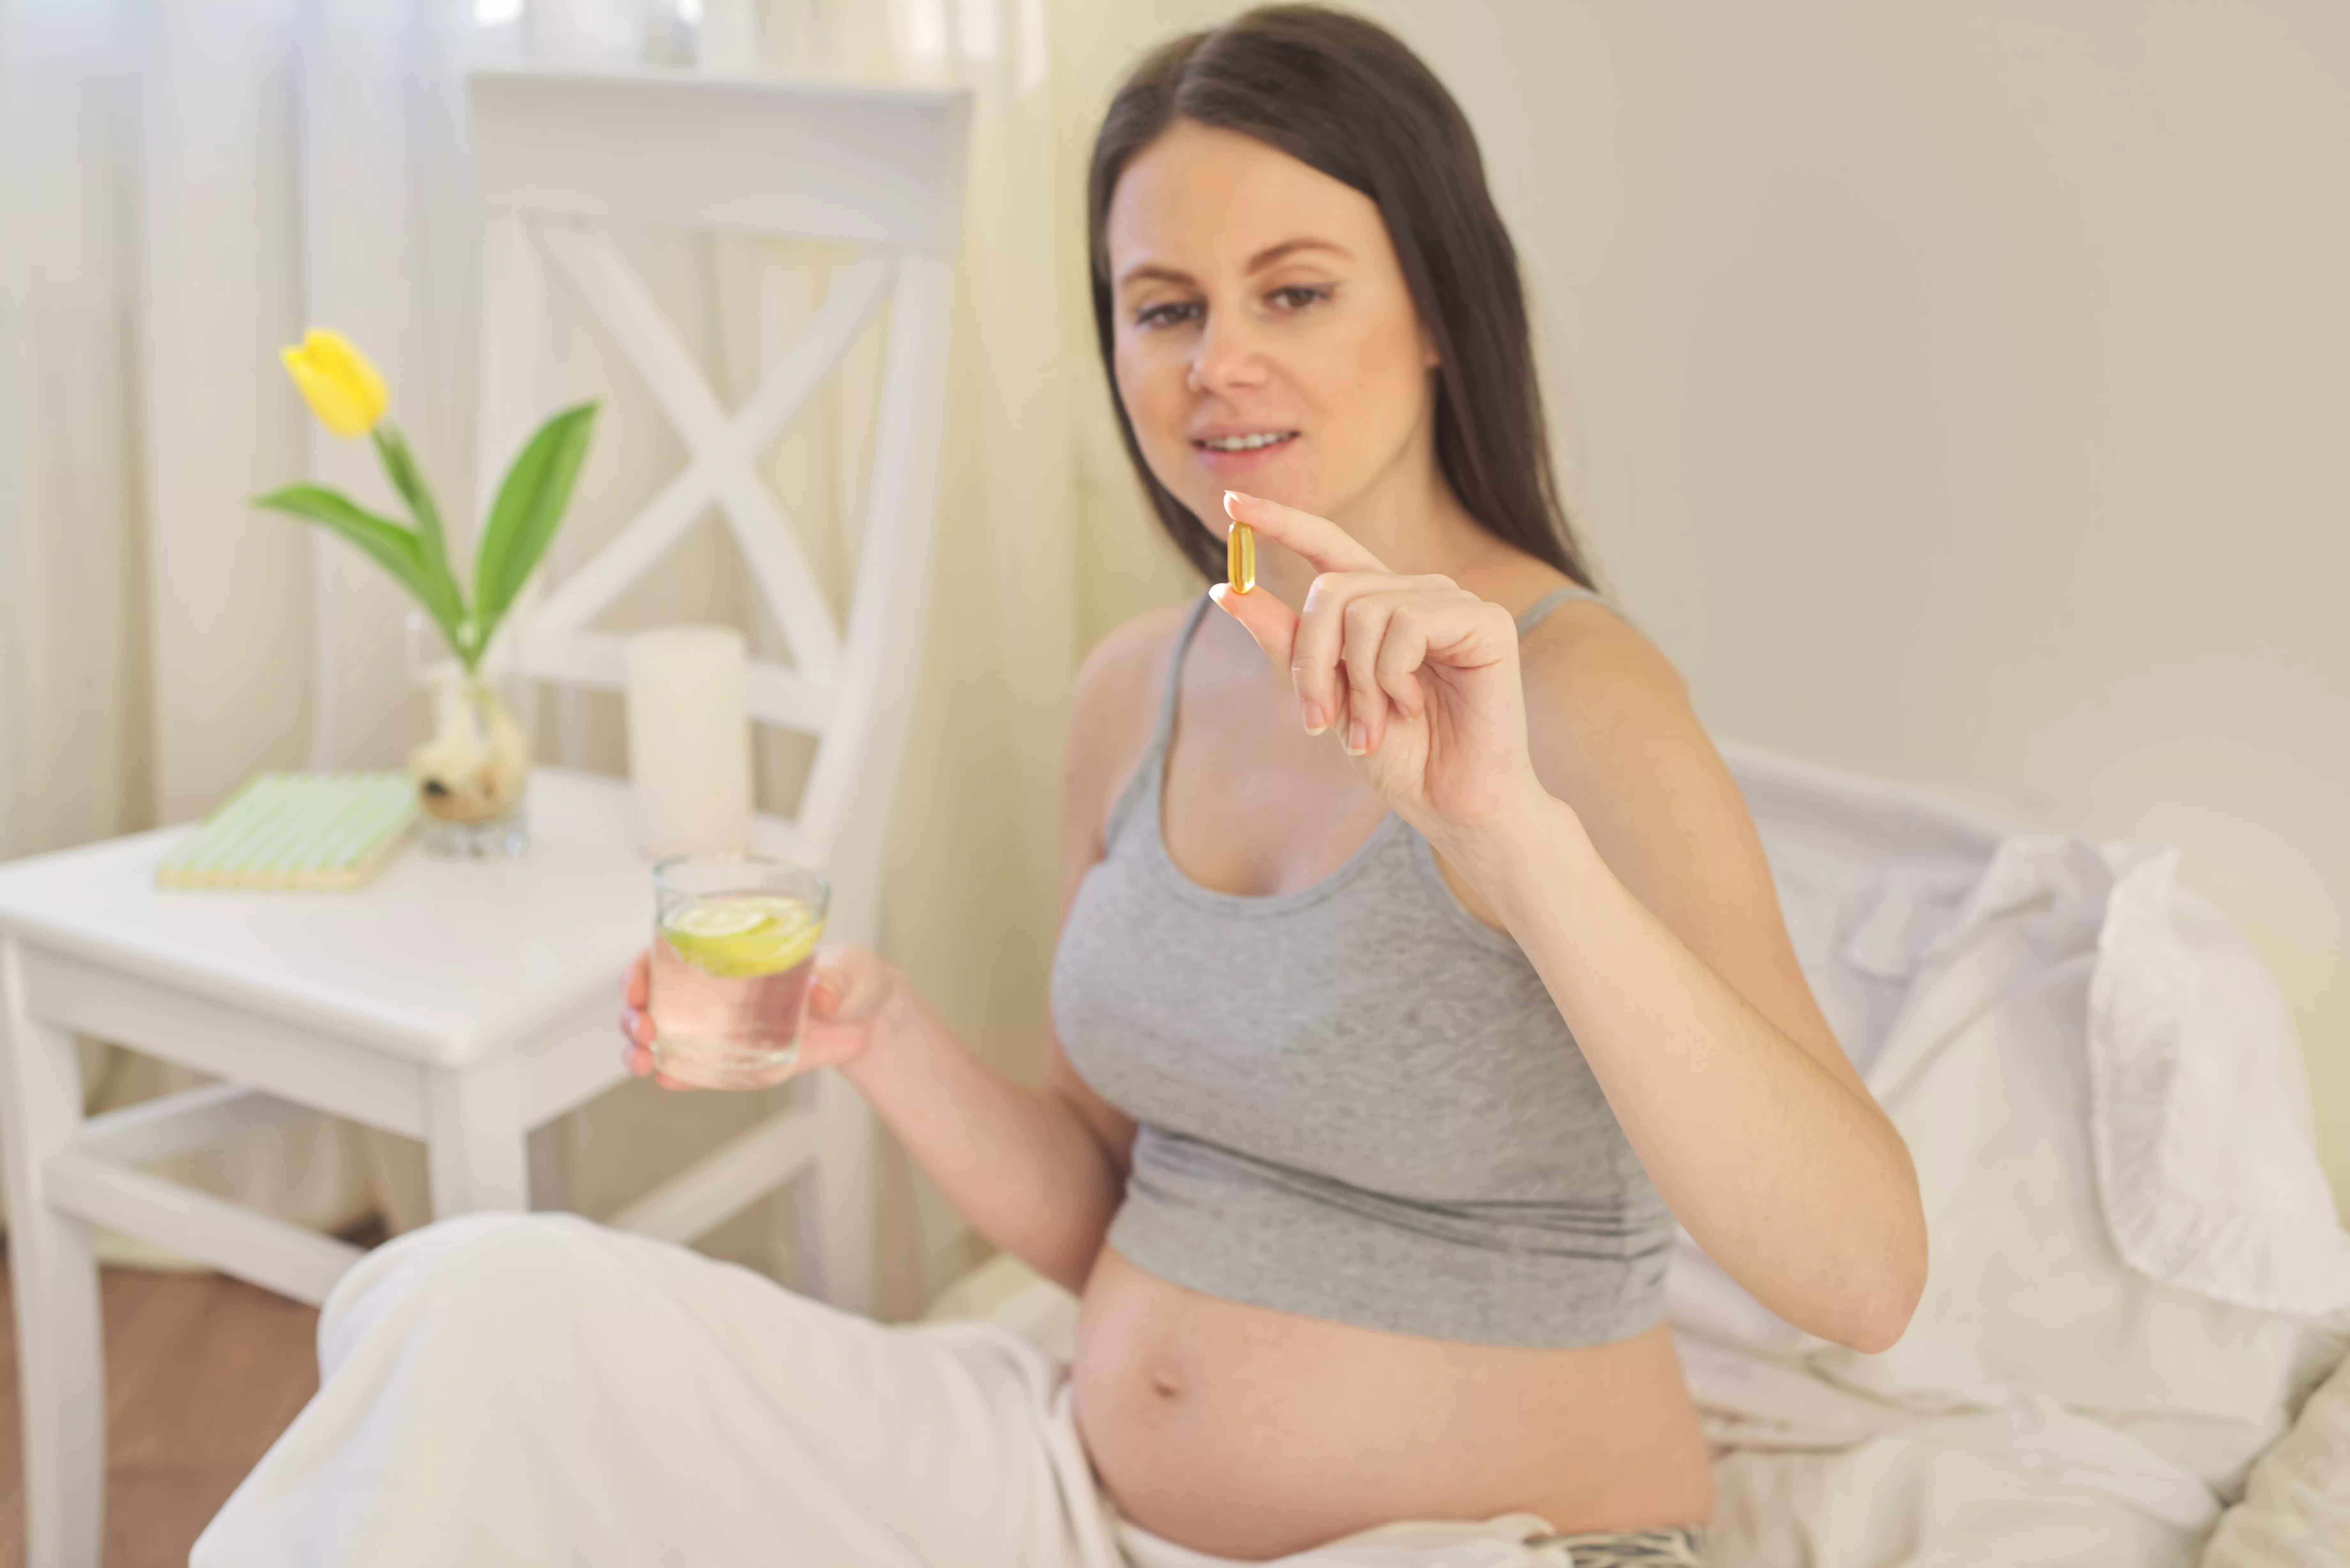 Welche Nahrungsergänzungsmittel sind während der Schwangerschaft empfehlenswert?